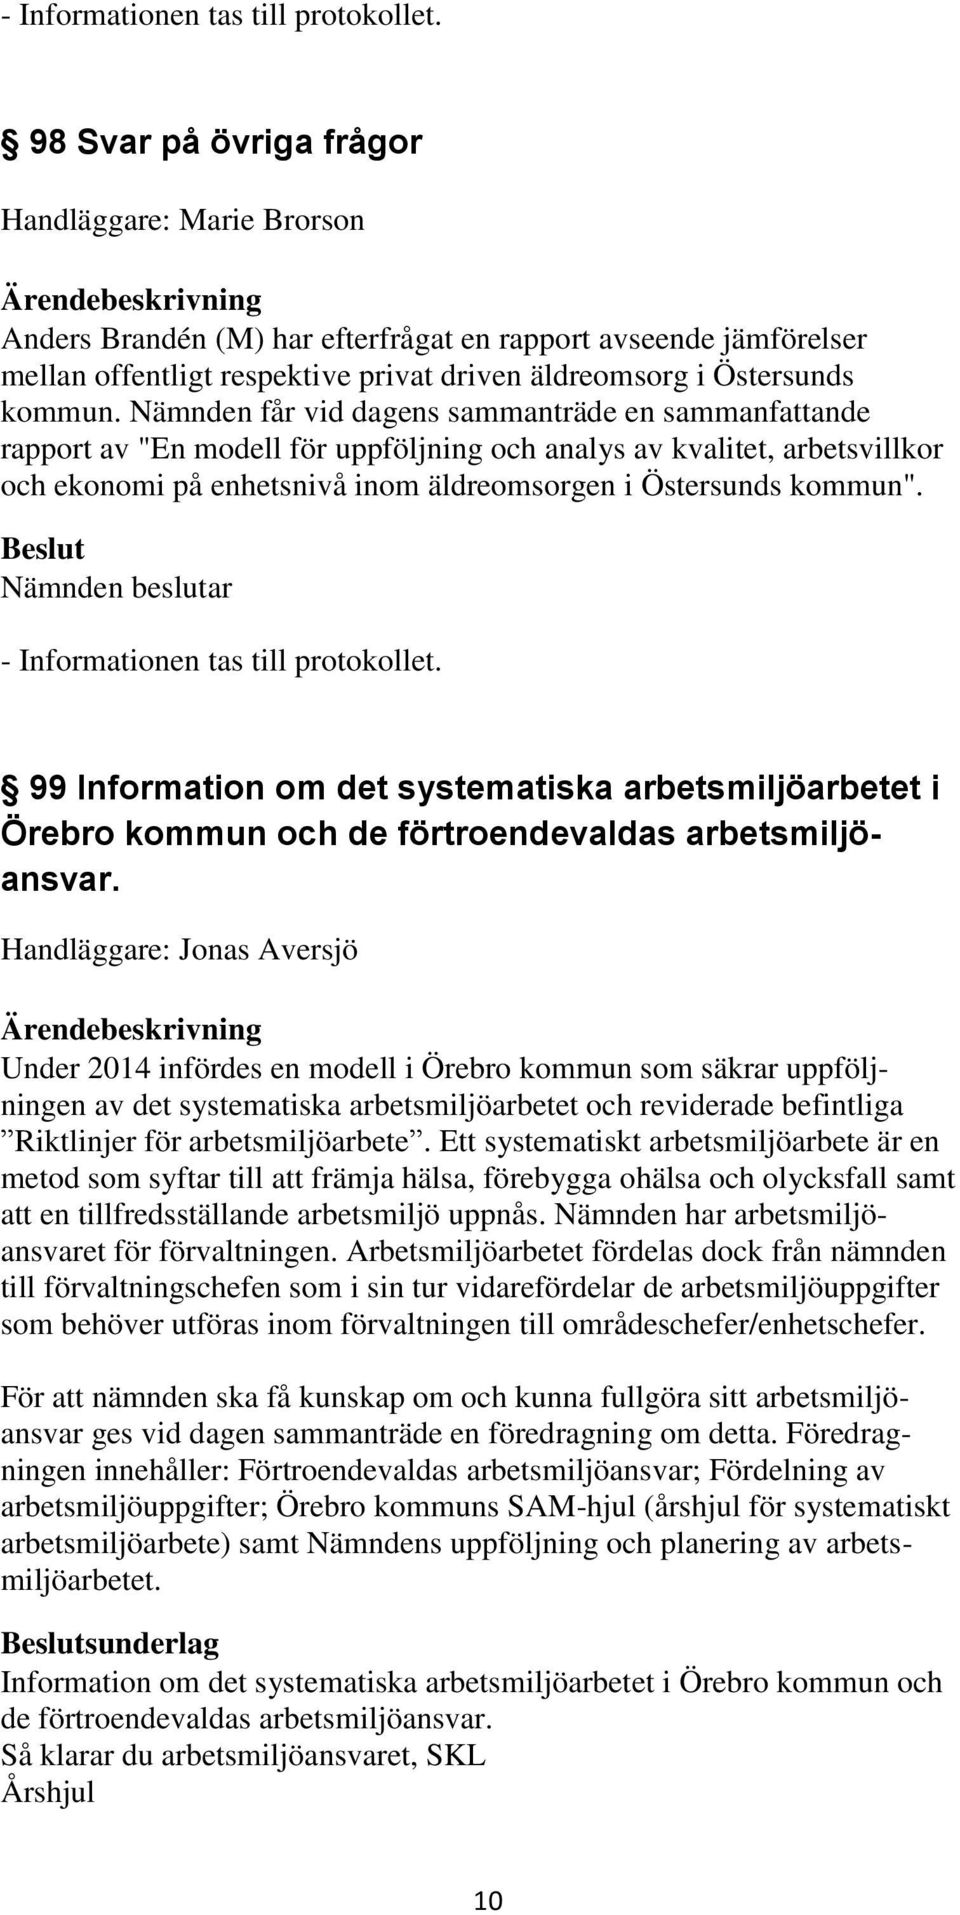 99 Information om det systematiska arbetsmiljöarbetet i Örebro kommun och de förtroendevaldas arbetsmiljöansvar.